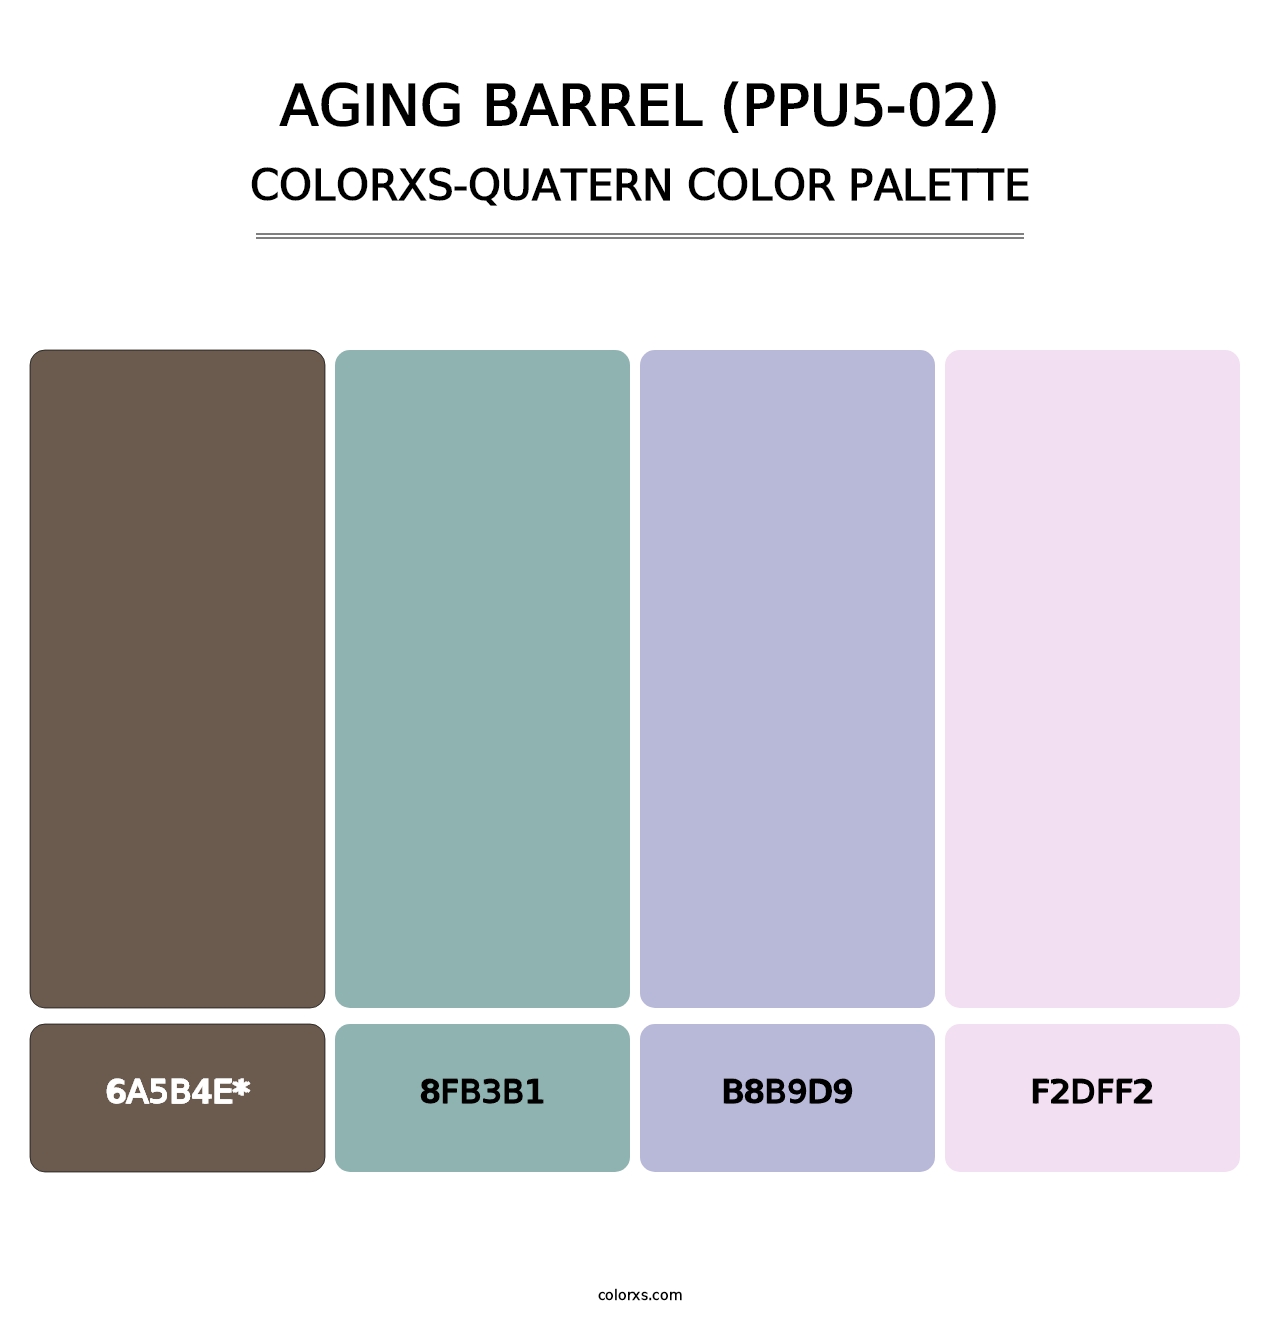 Aging Barrel (PPU5-02) - Colorxs Quatern Palette